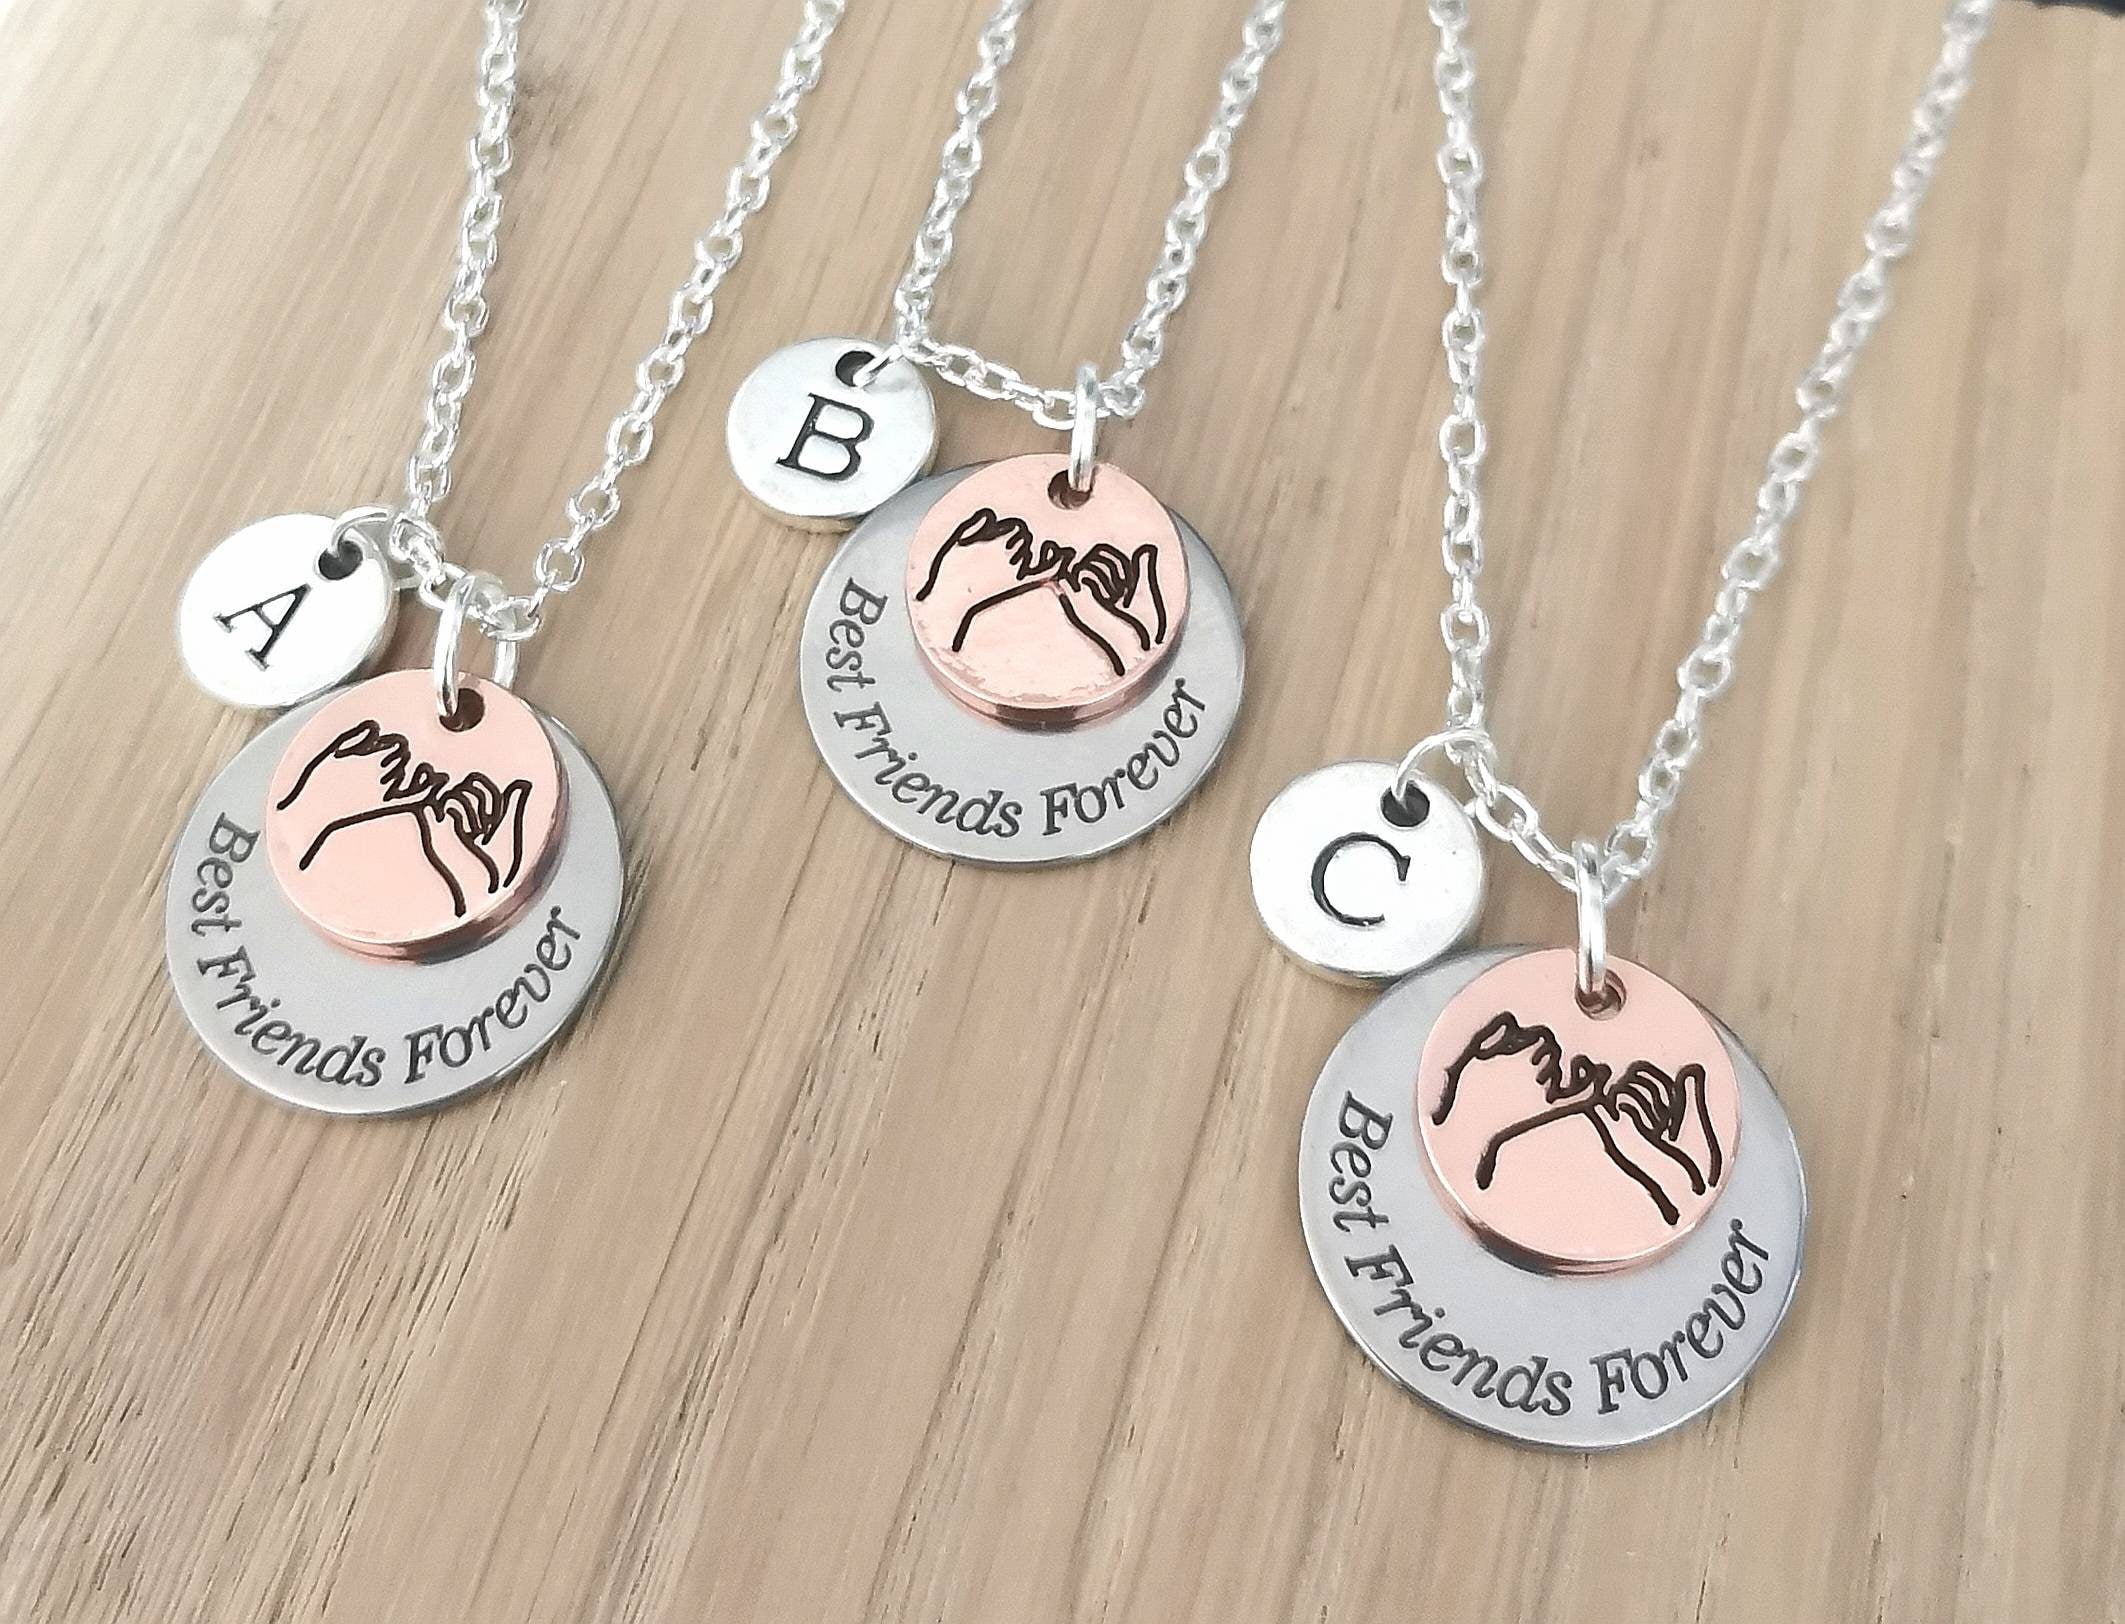 4 friends necklace set- Set of 4 necklaces, Gift Set, Friendship